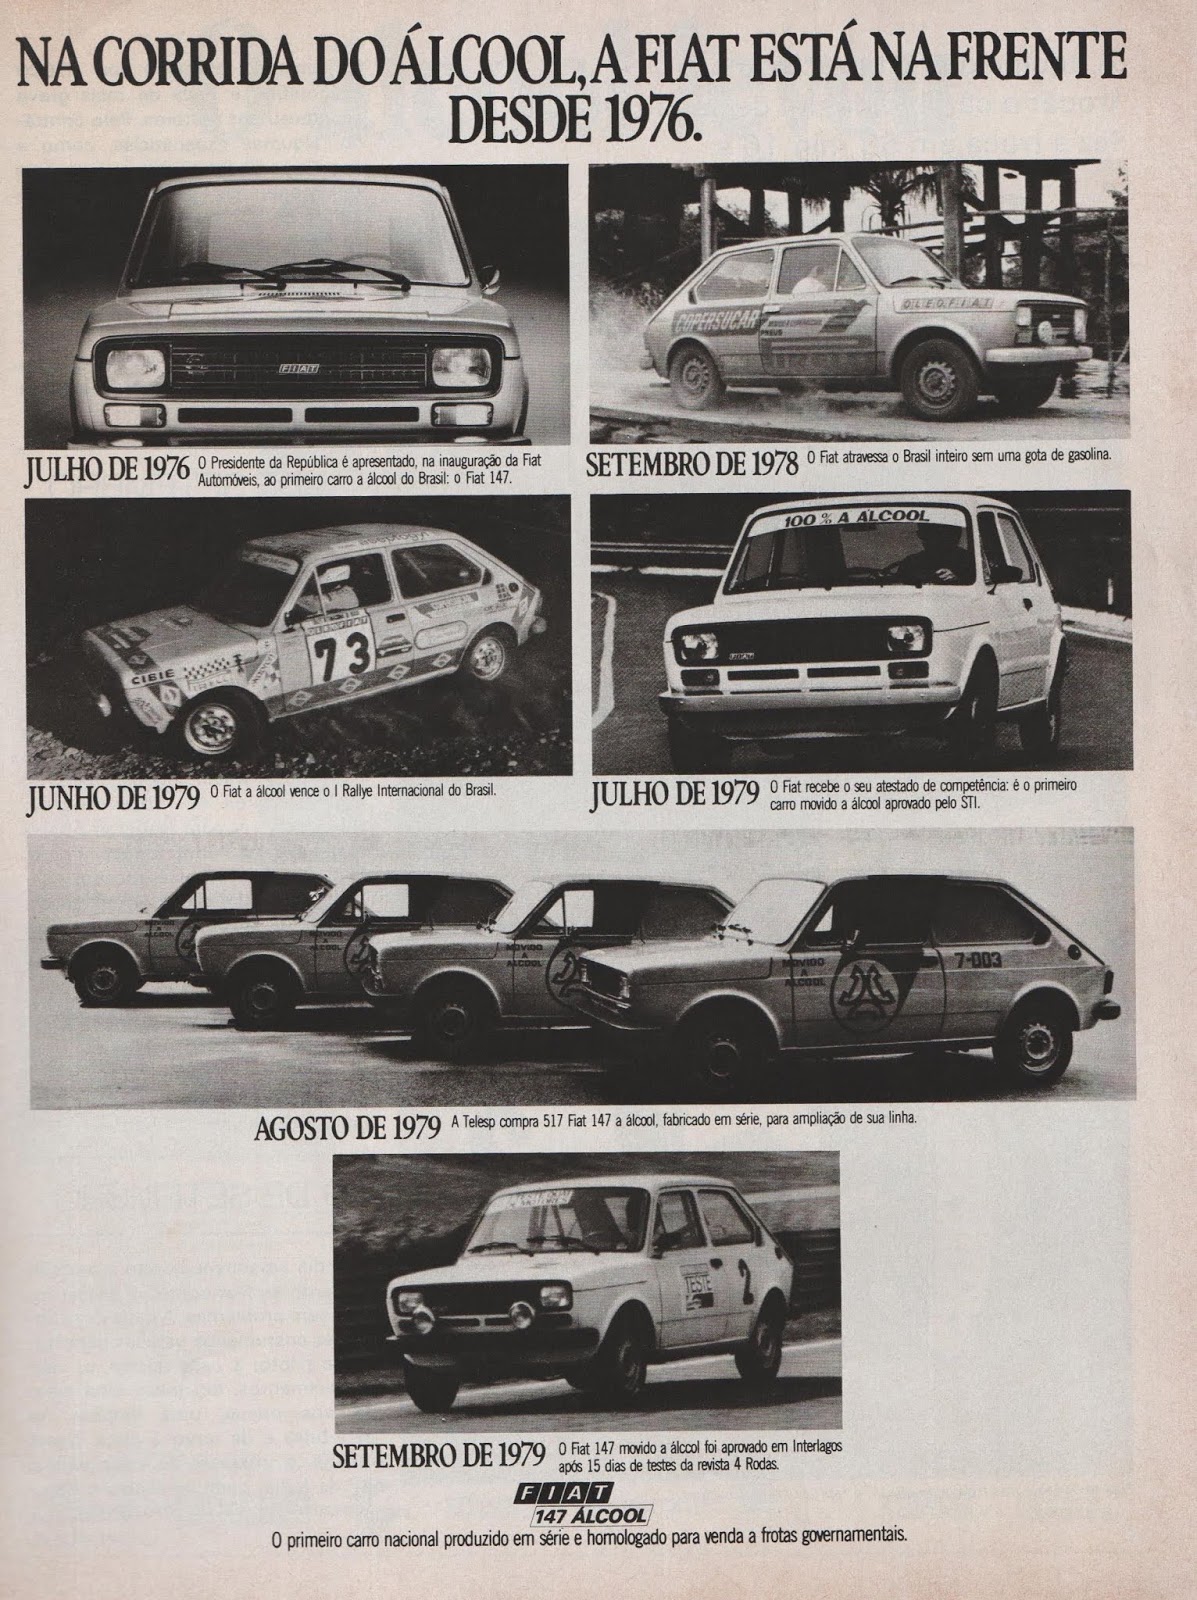 Campanha da Fiat de 1979 onde promovia sua linha de automóveis movidos a álcool.